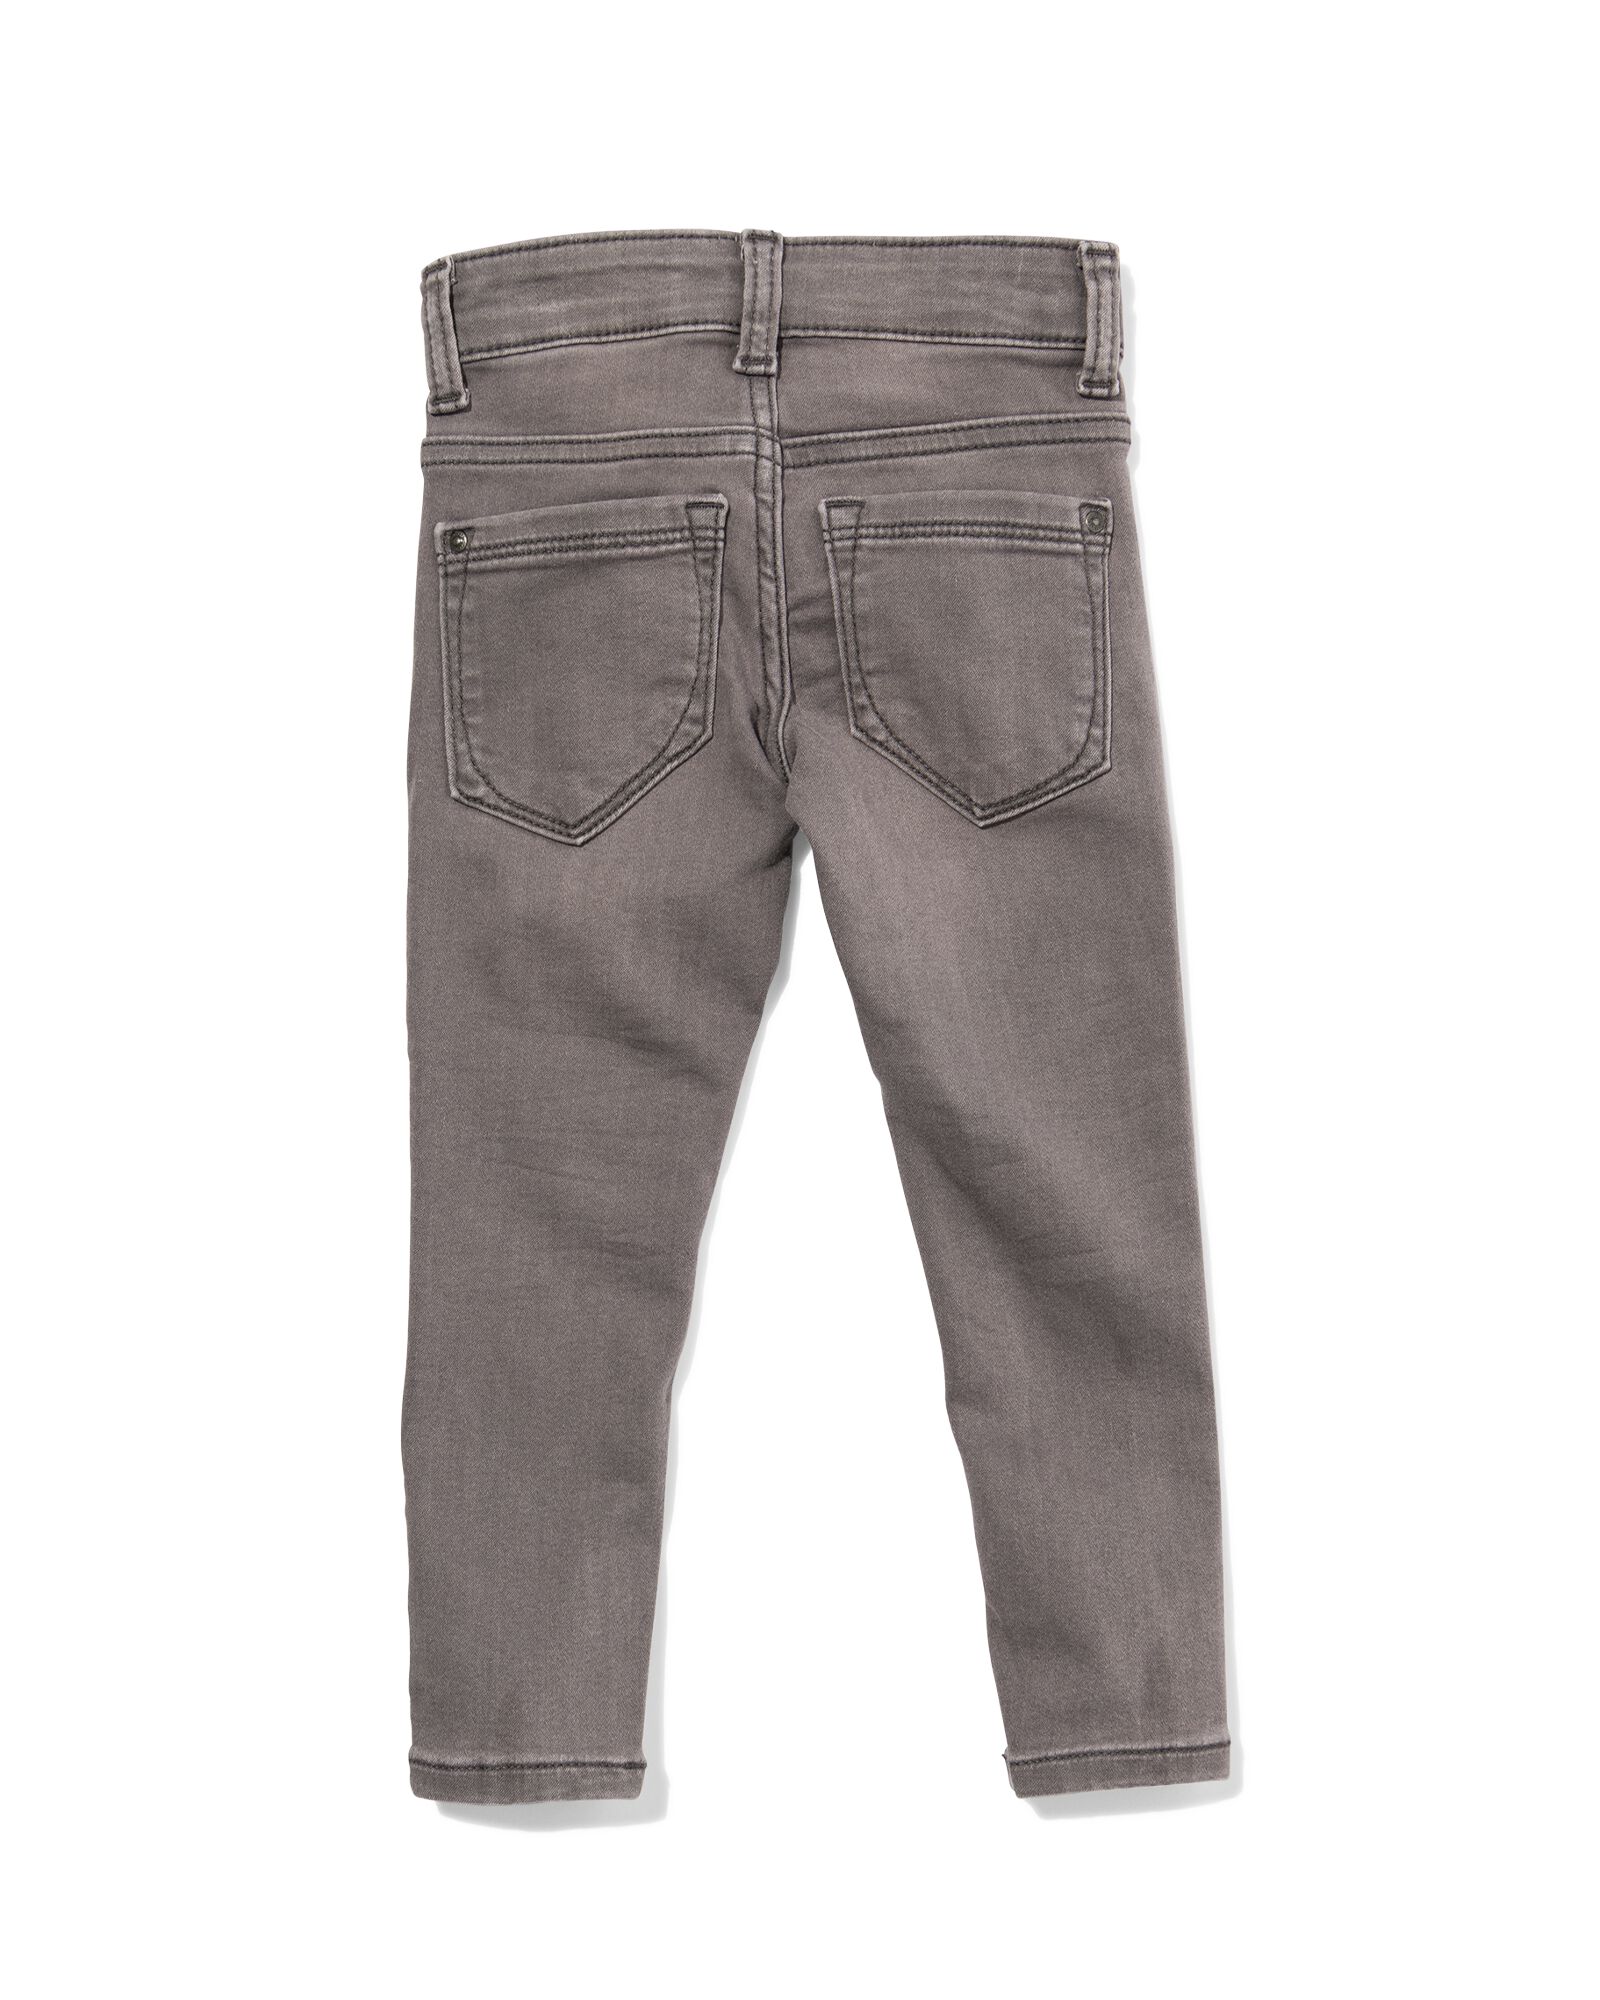 kinder jeans skinny fit grijs 146 - 30874880 - HEMA